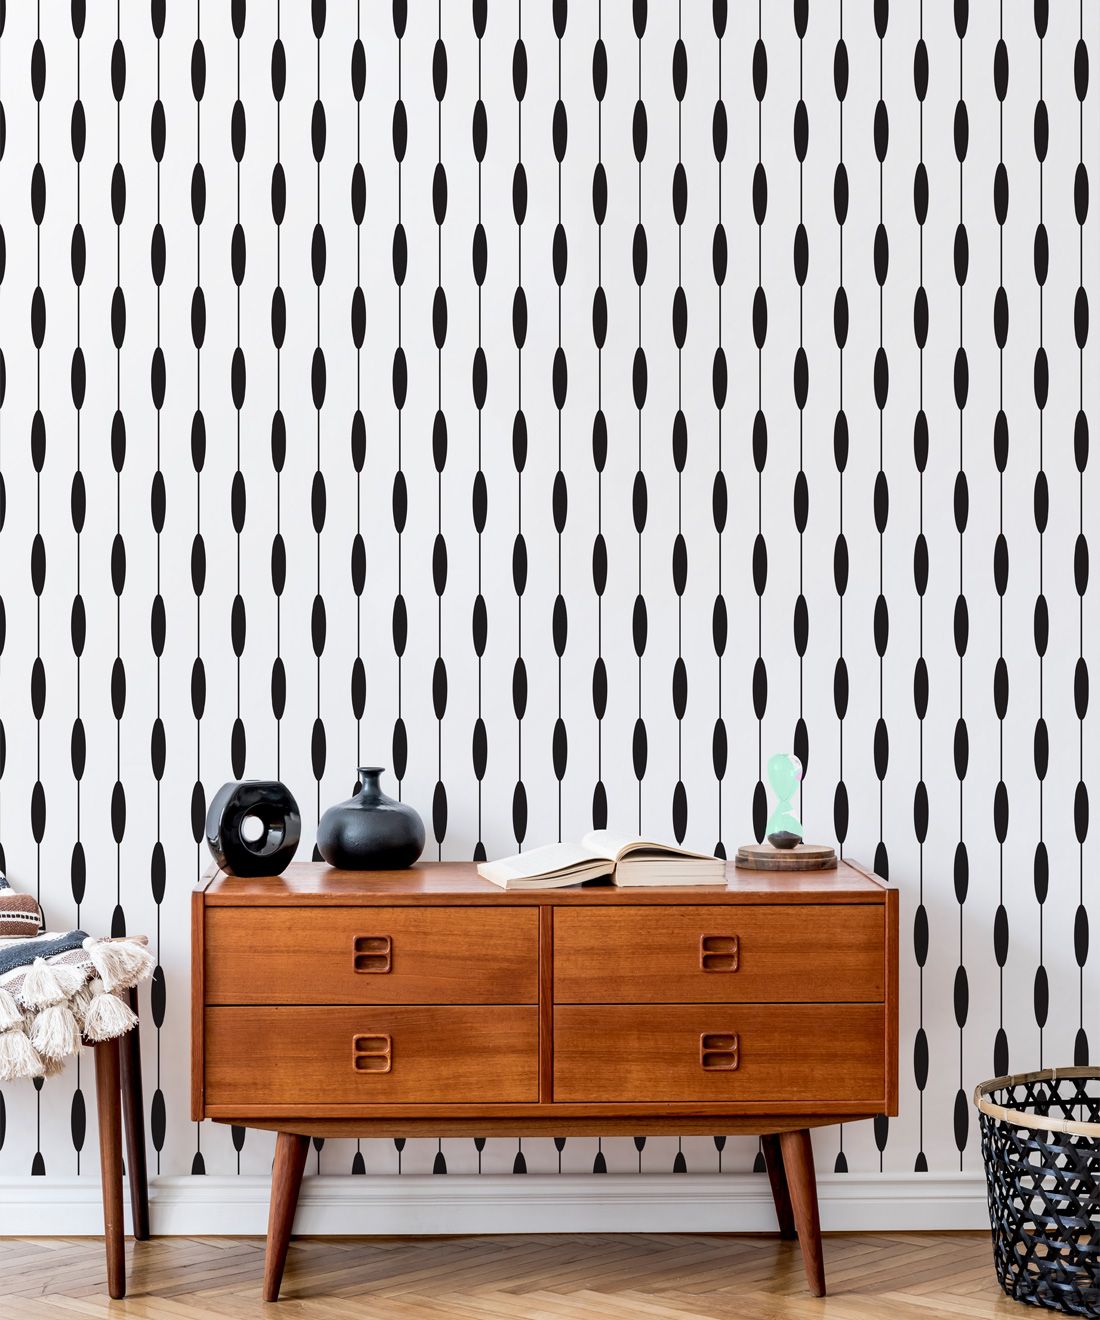 Bowline Wallpaper • Geometric Wallpaper • Striped Wallpaper • Black & White Wallpaper • Insitu